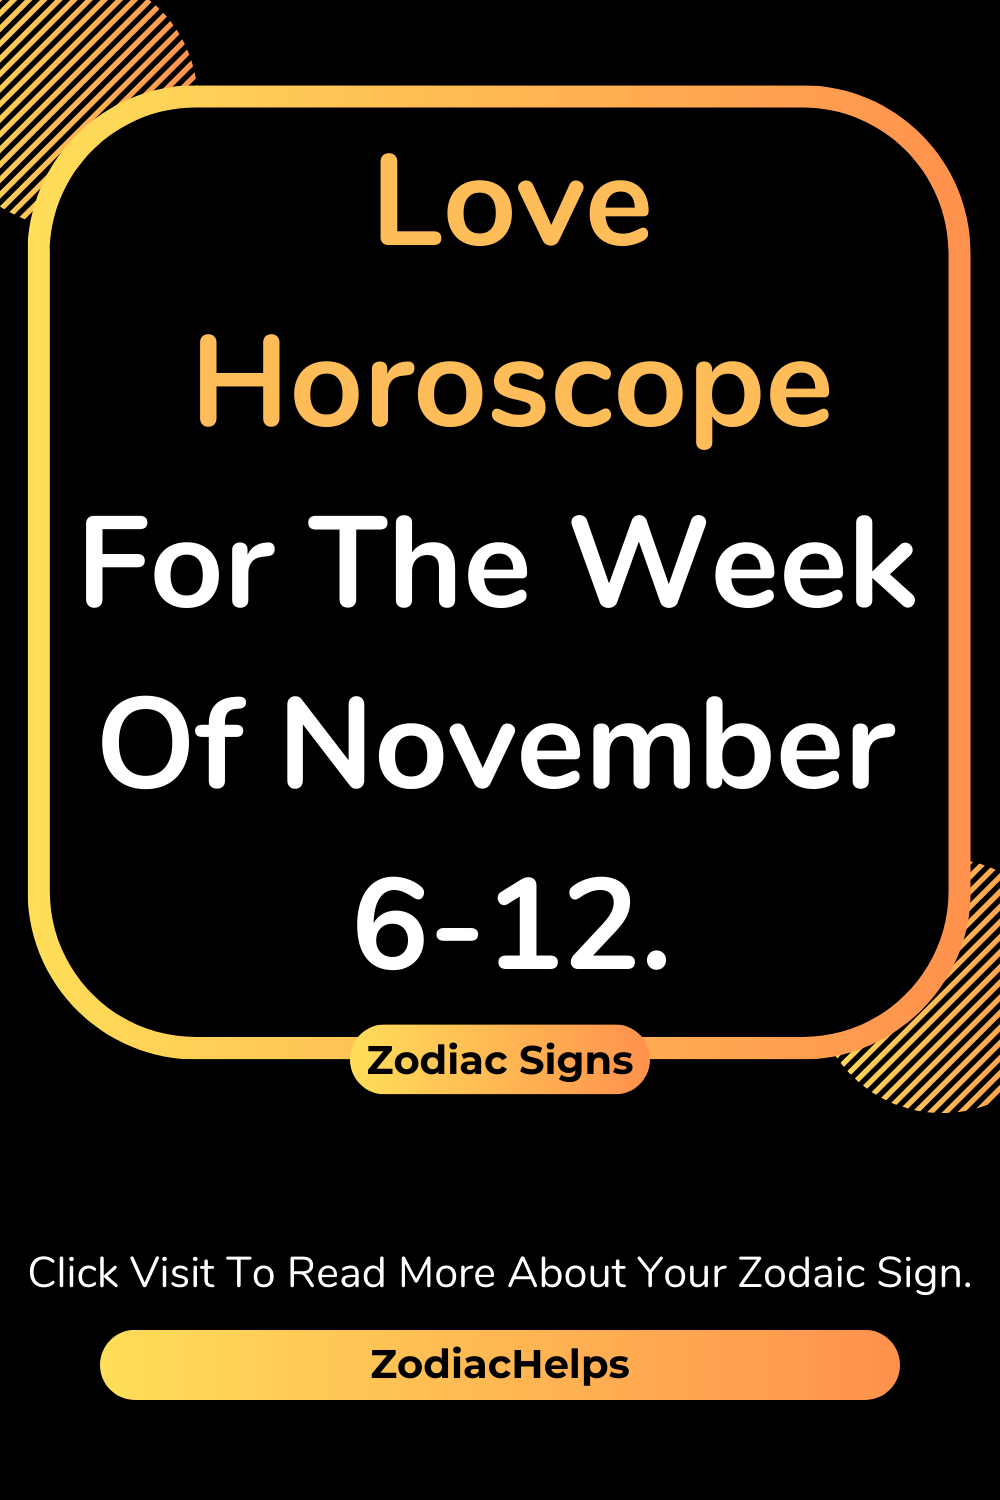 Love Horoscope For The Week Of November 6-12.